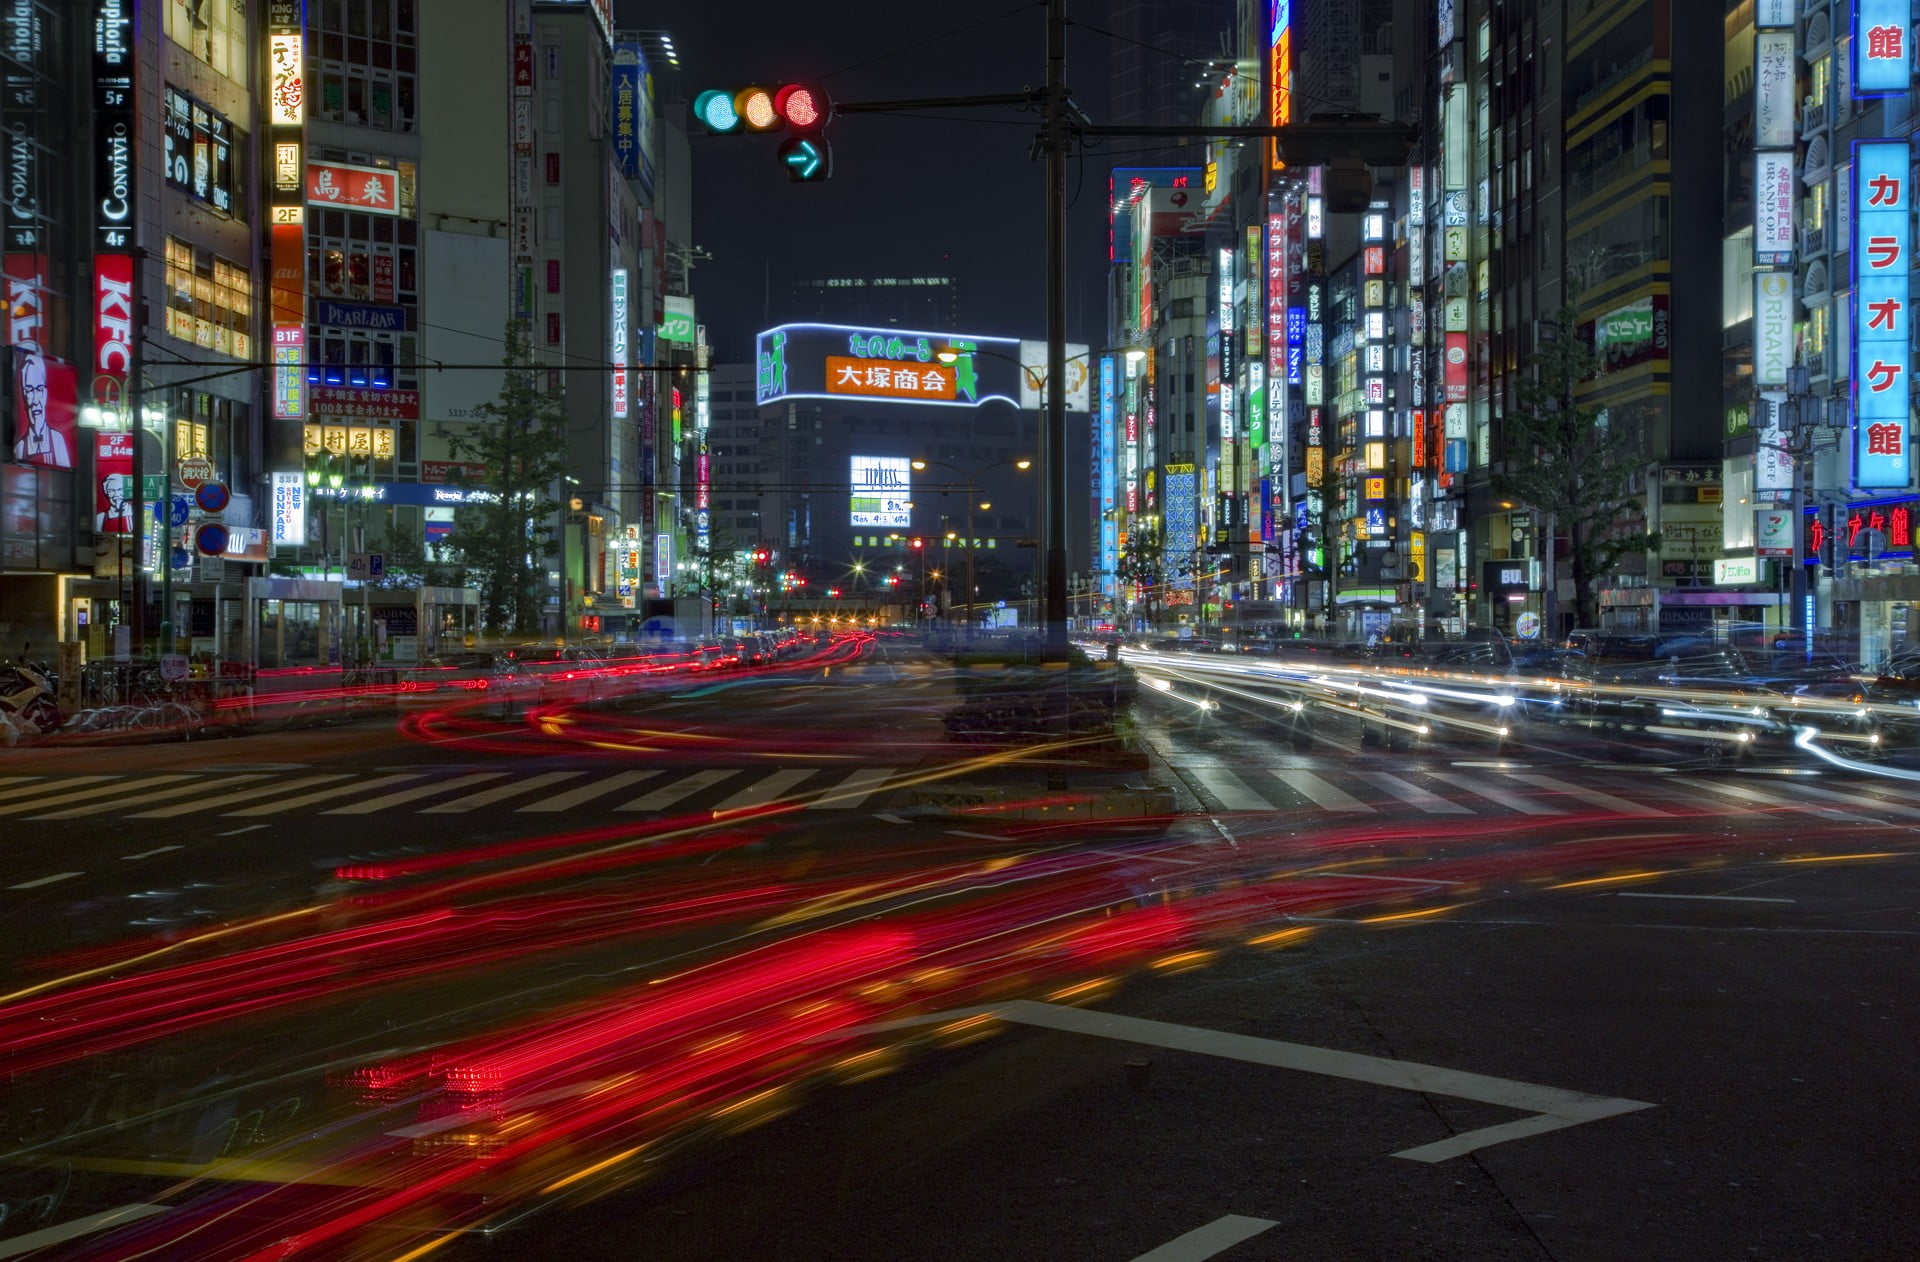 Tokyo drive